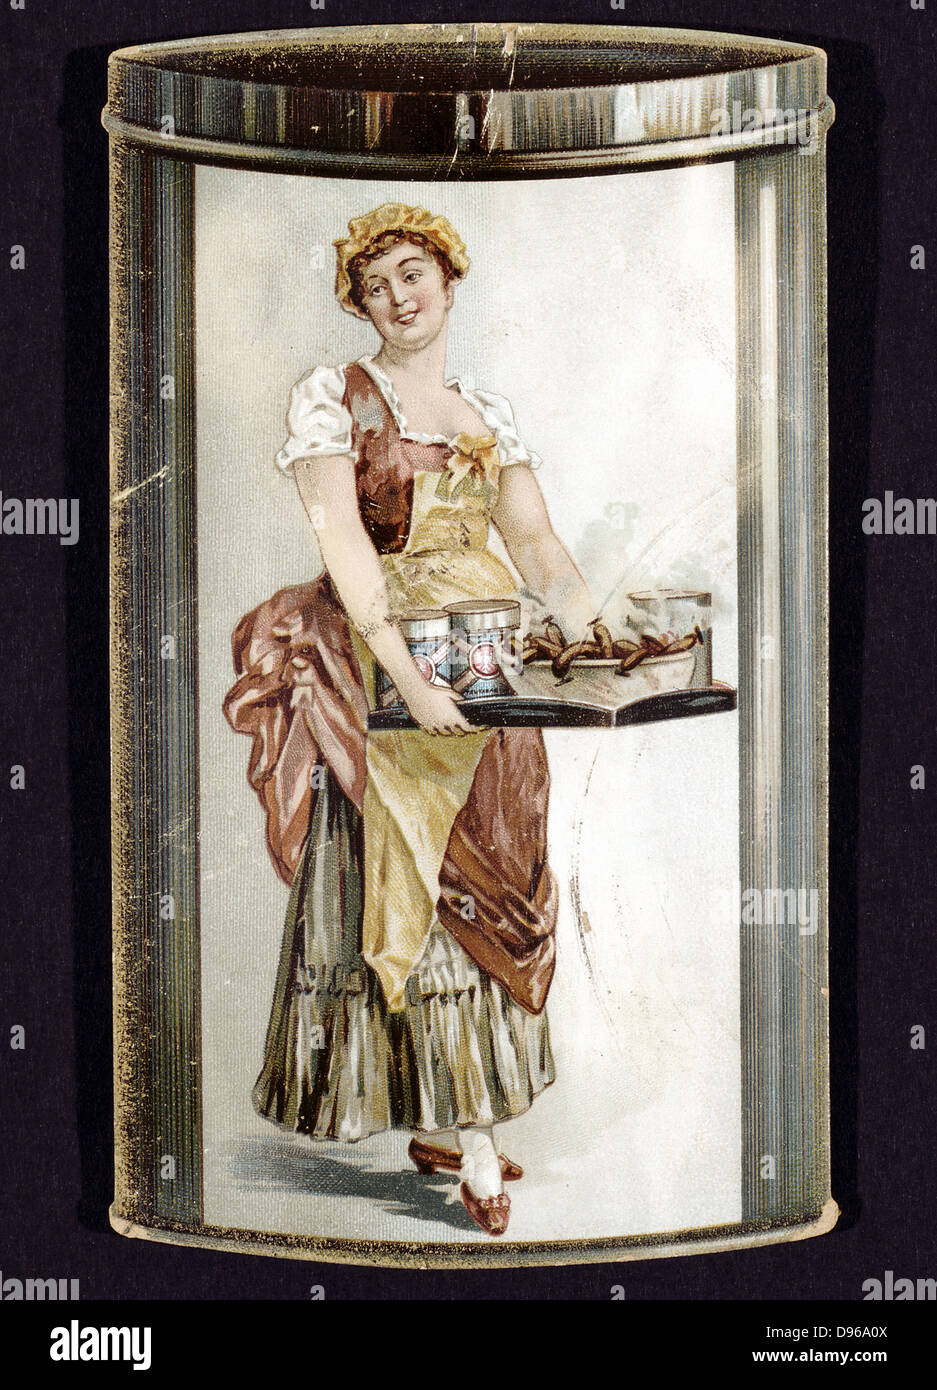 Commerce de marche arrière pour les conserves carte saucisses produites par Heinrich Bauer de Frankfurt am Main c1895, montrant smiling girl avec bac de saucisses. Banque D'Images